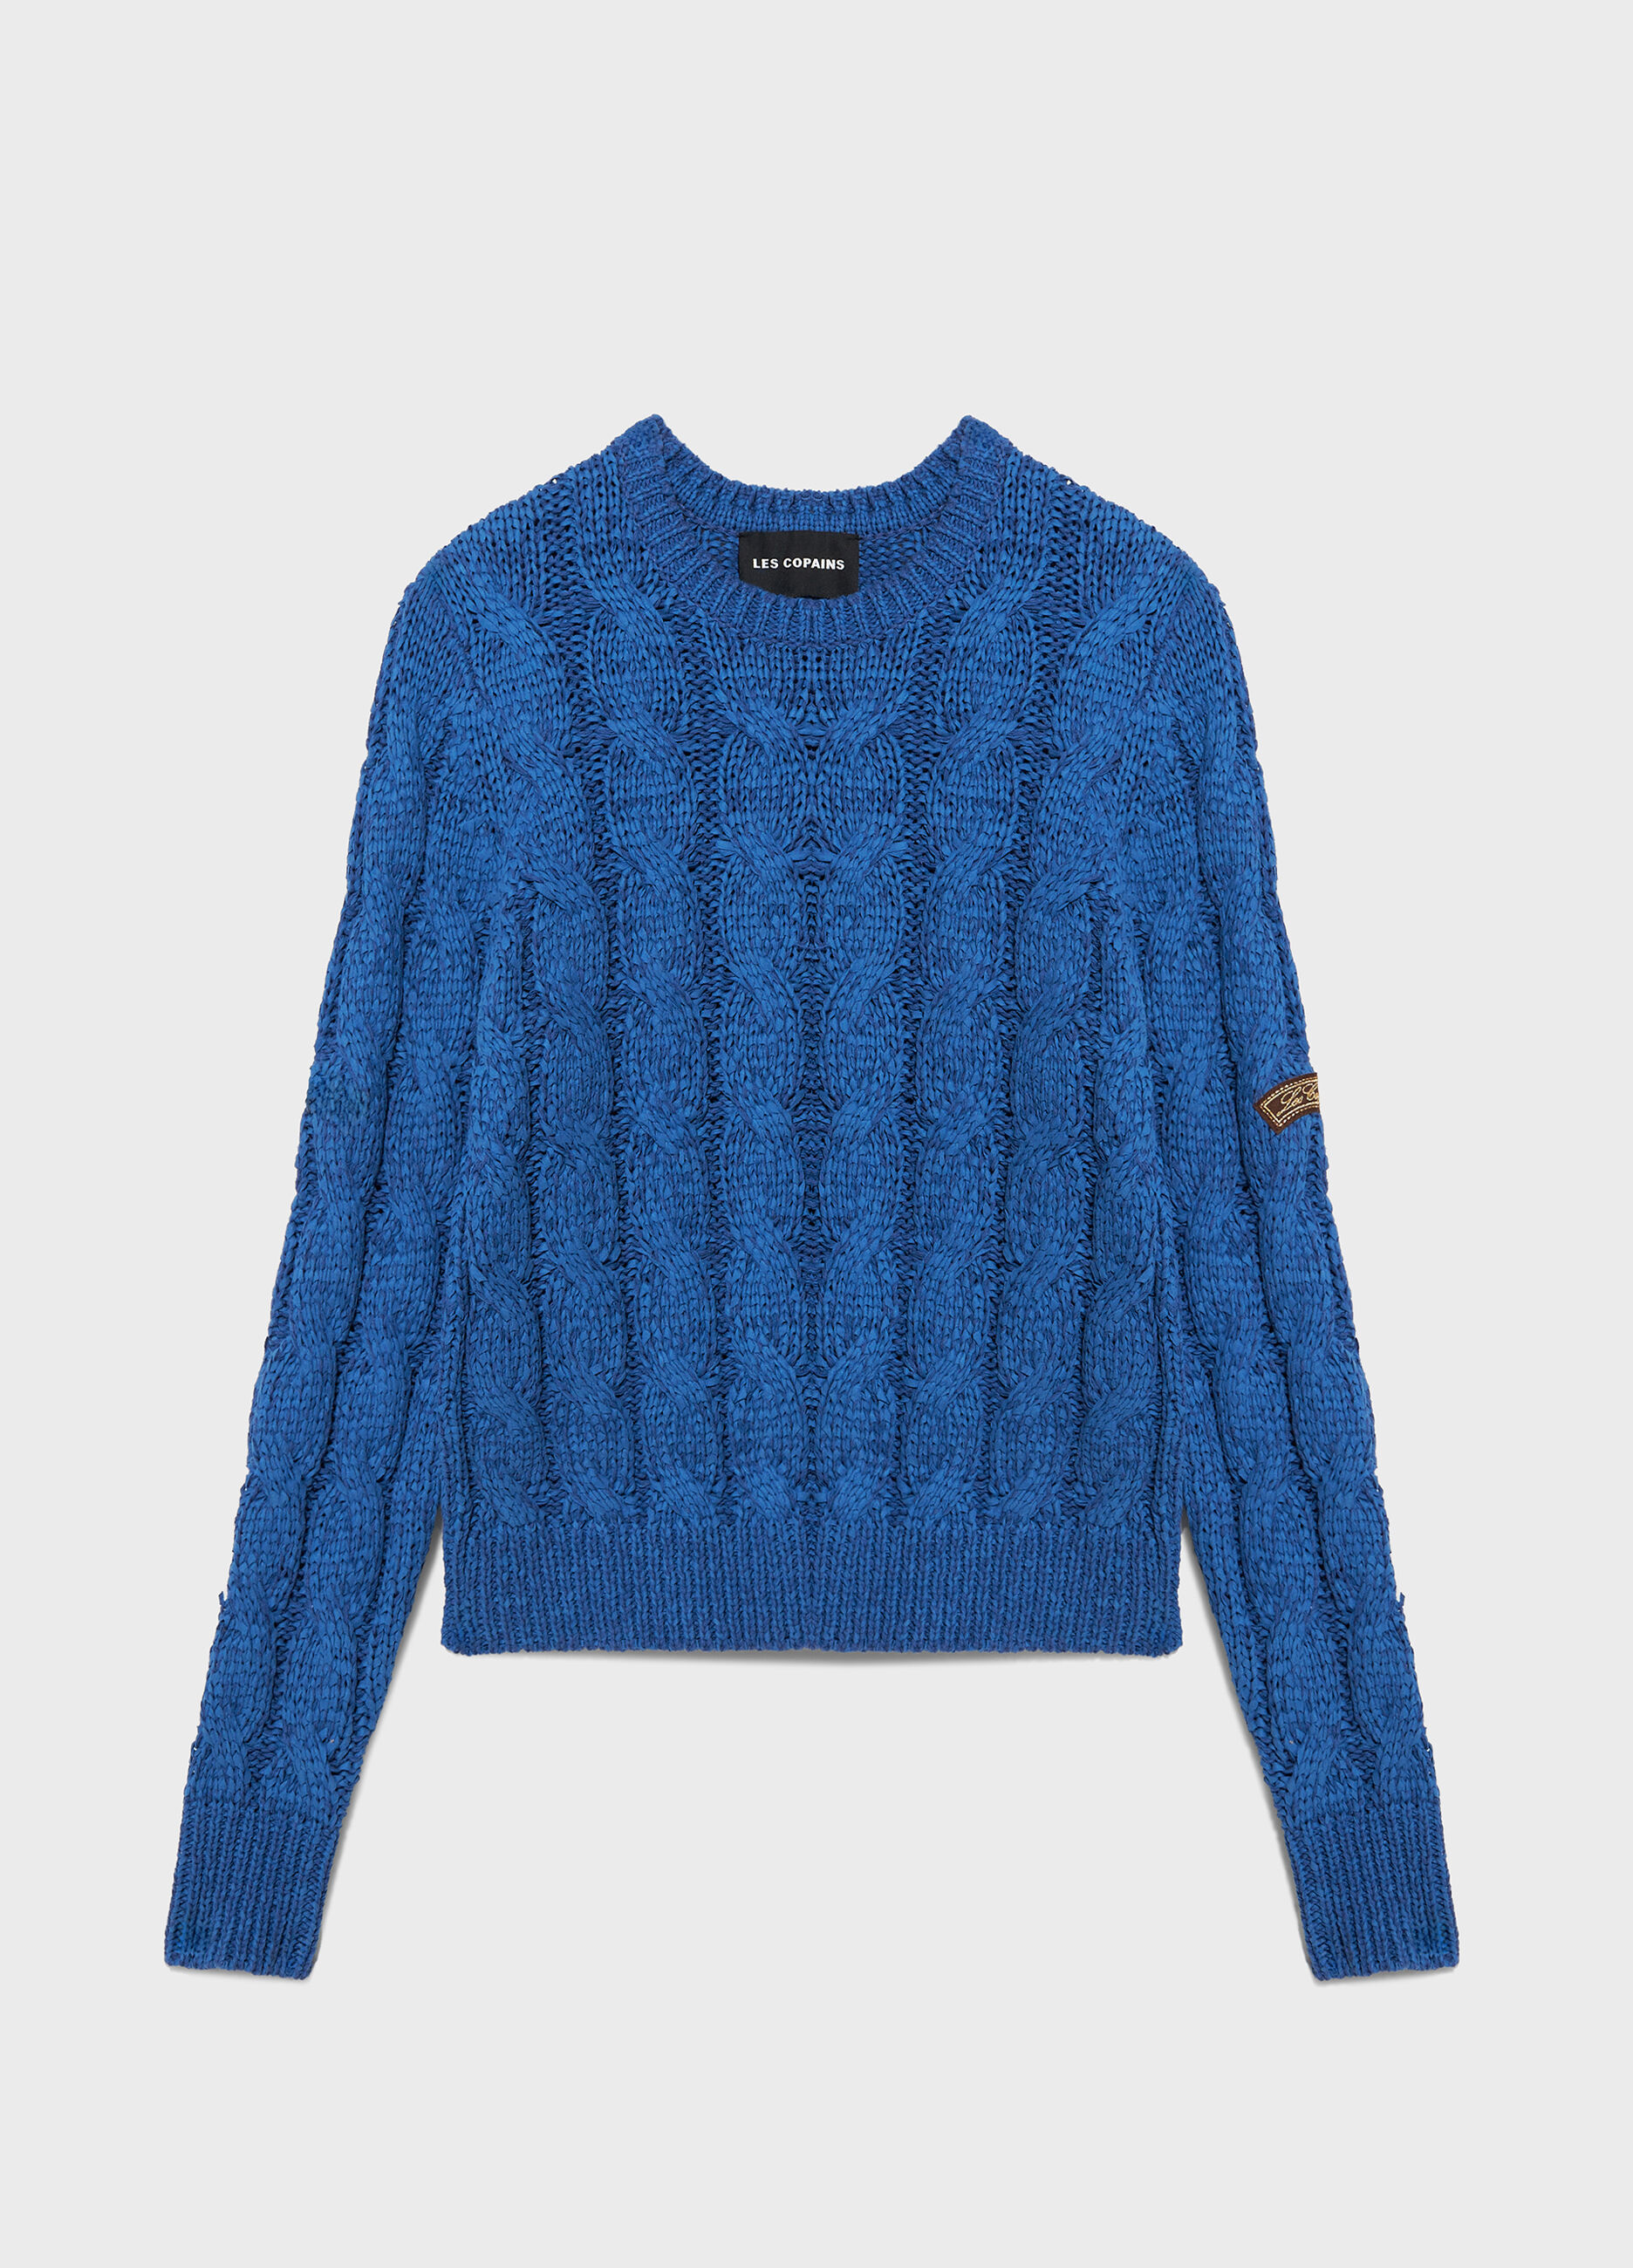 Maglione tricot a trecce_4